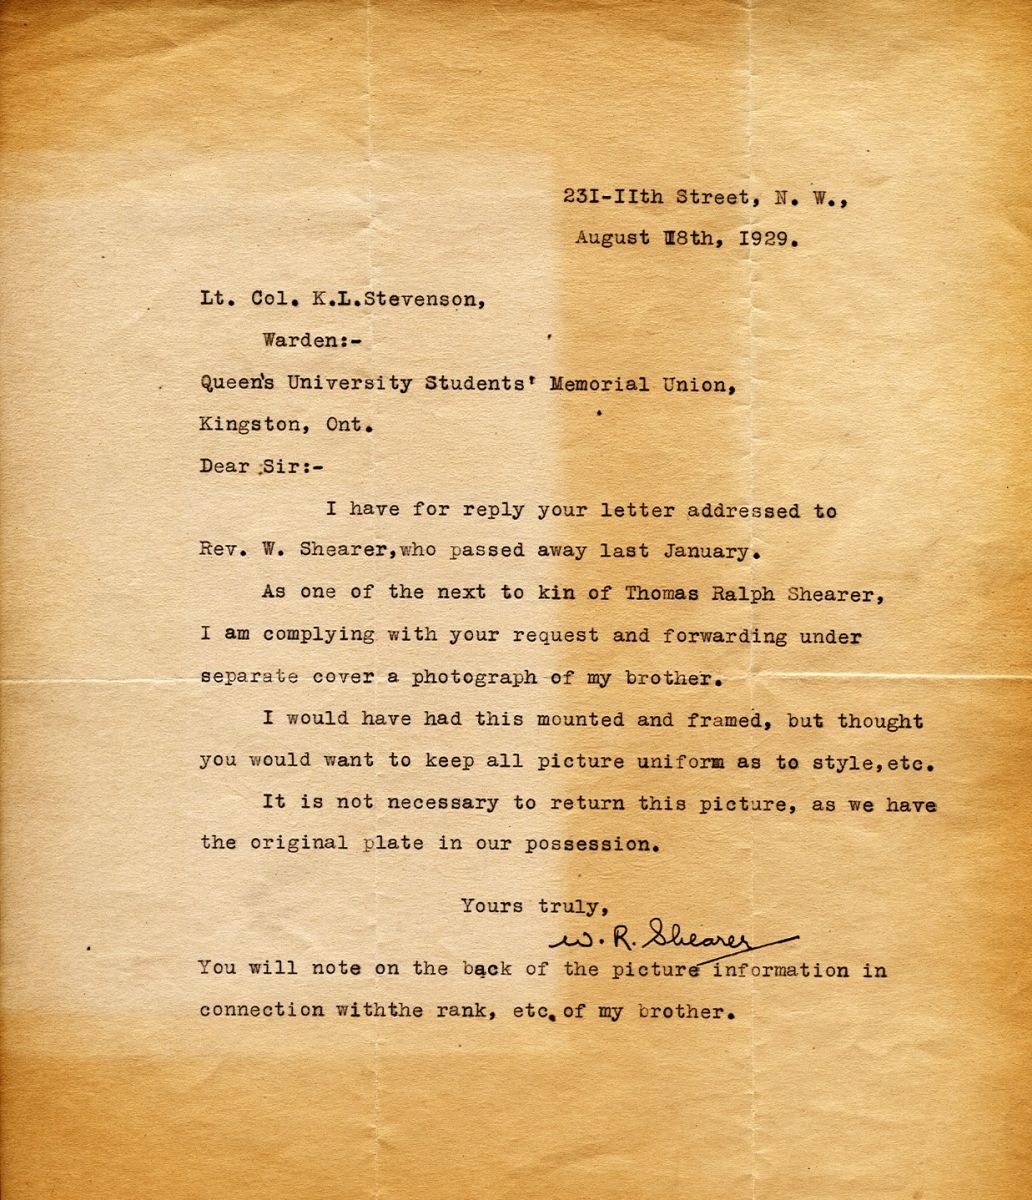 Letter from W.R. Shearer to Lt. Col. K.L. Stevenson, 18th August 1929